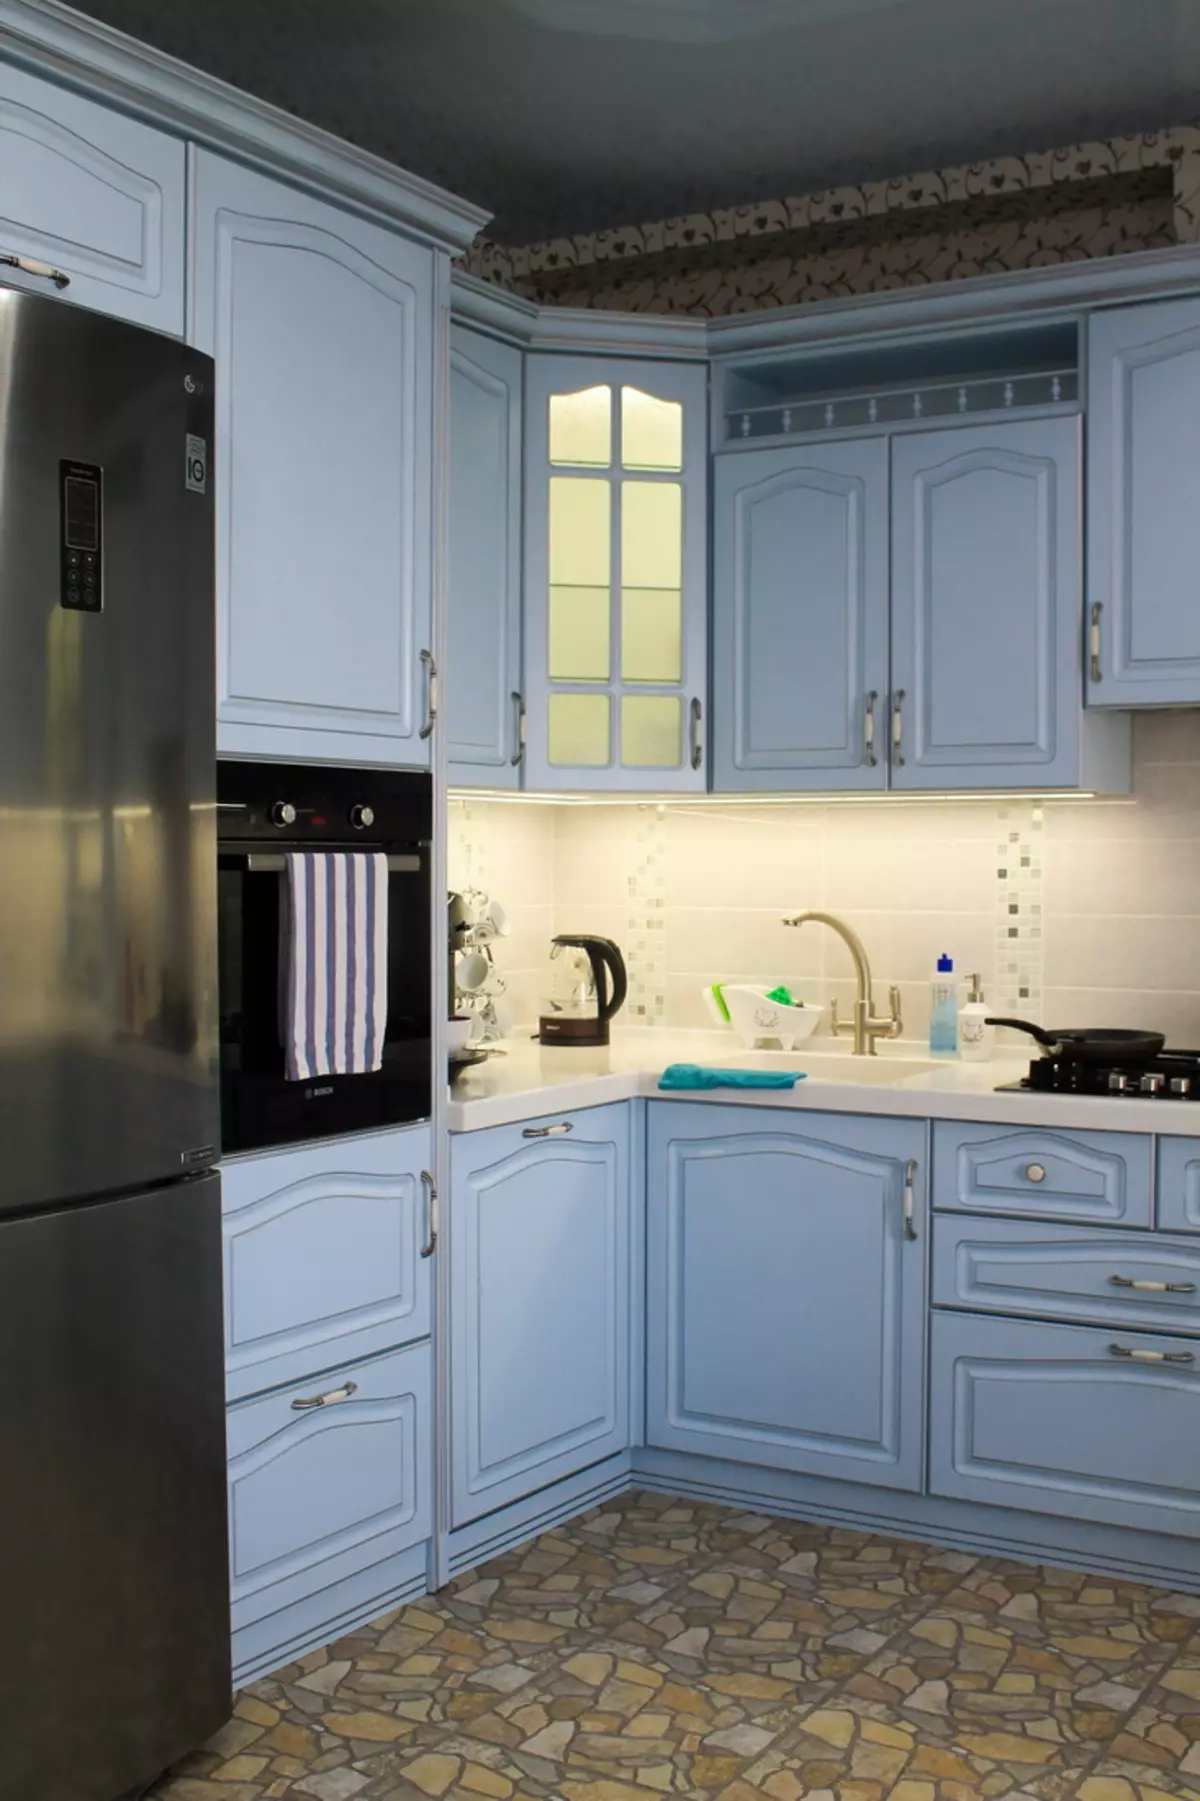 藍廚房（82張照片）：在藍色廚房套裝內部合併哪種顏色？淺藍色和深藍色色調的廚房設計 9555_23